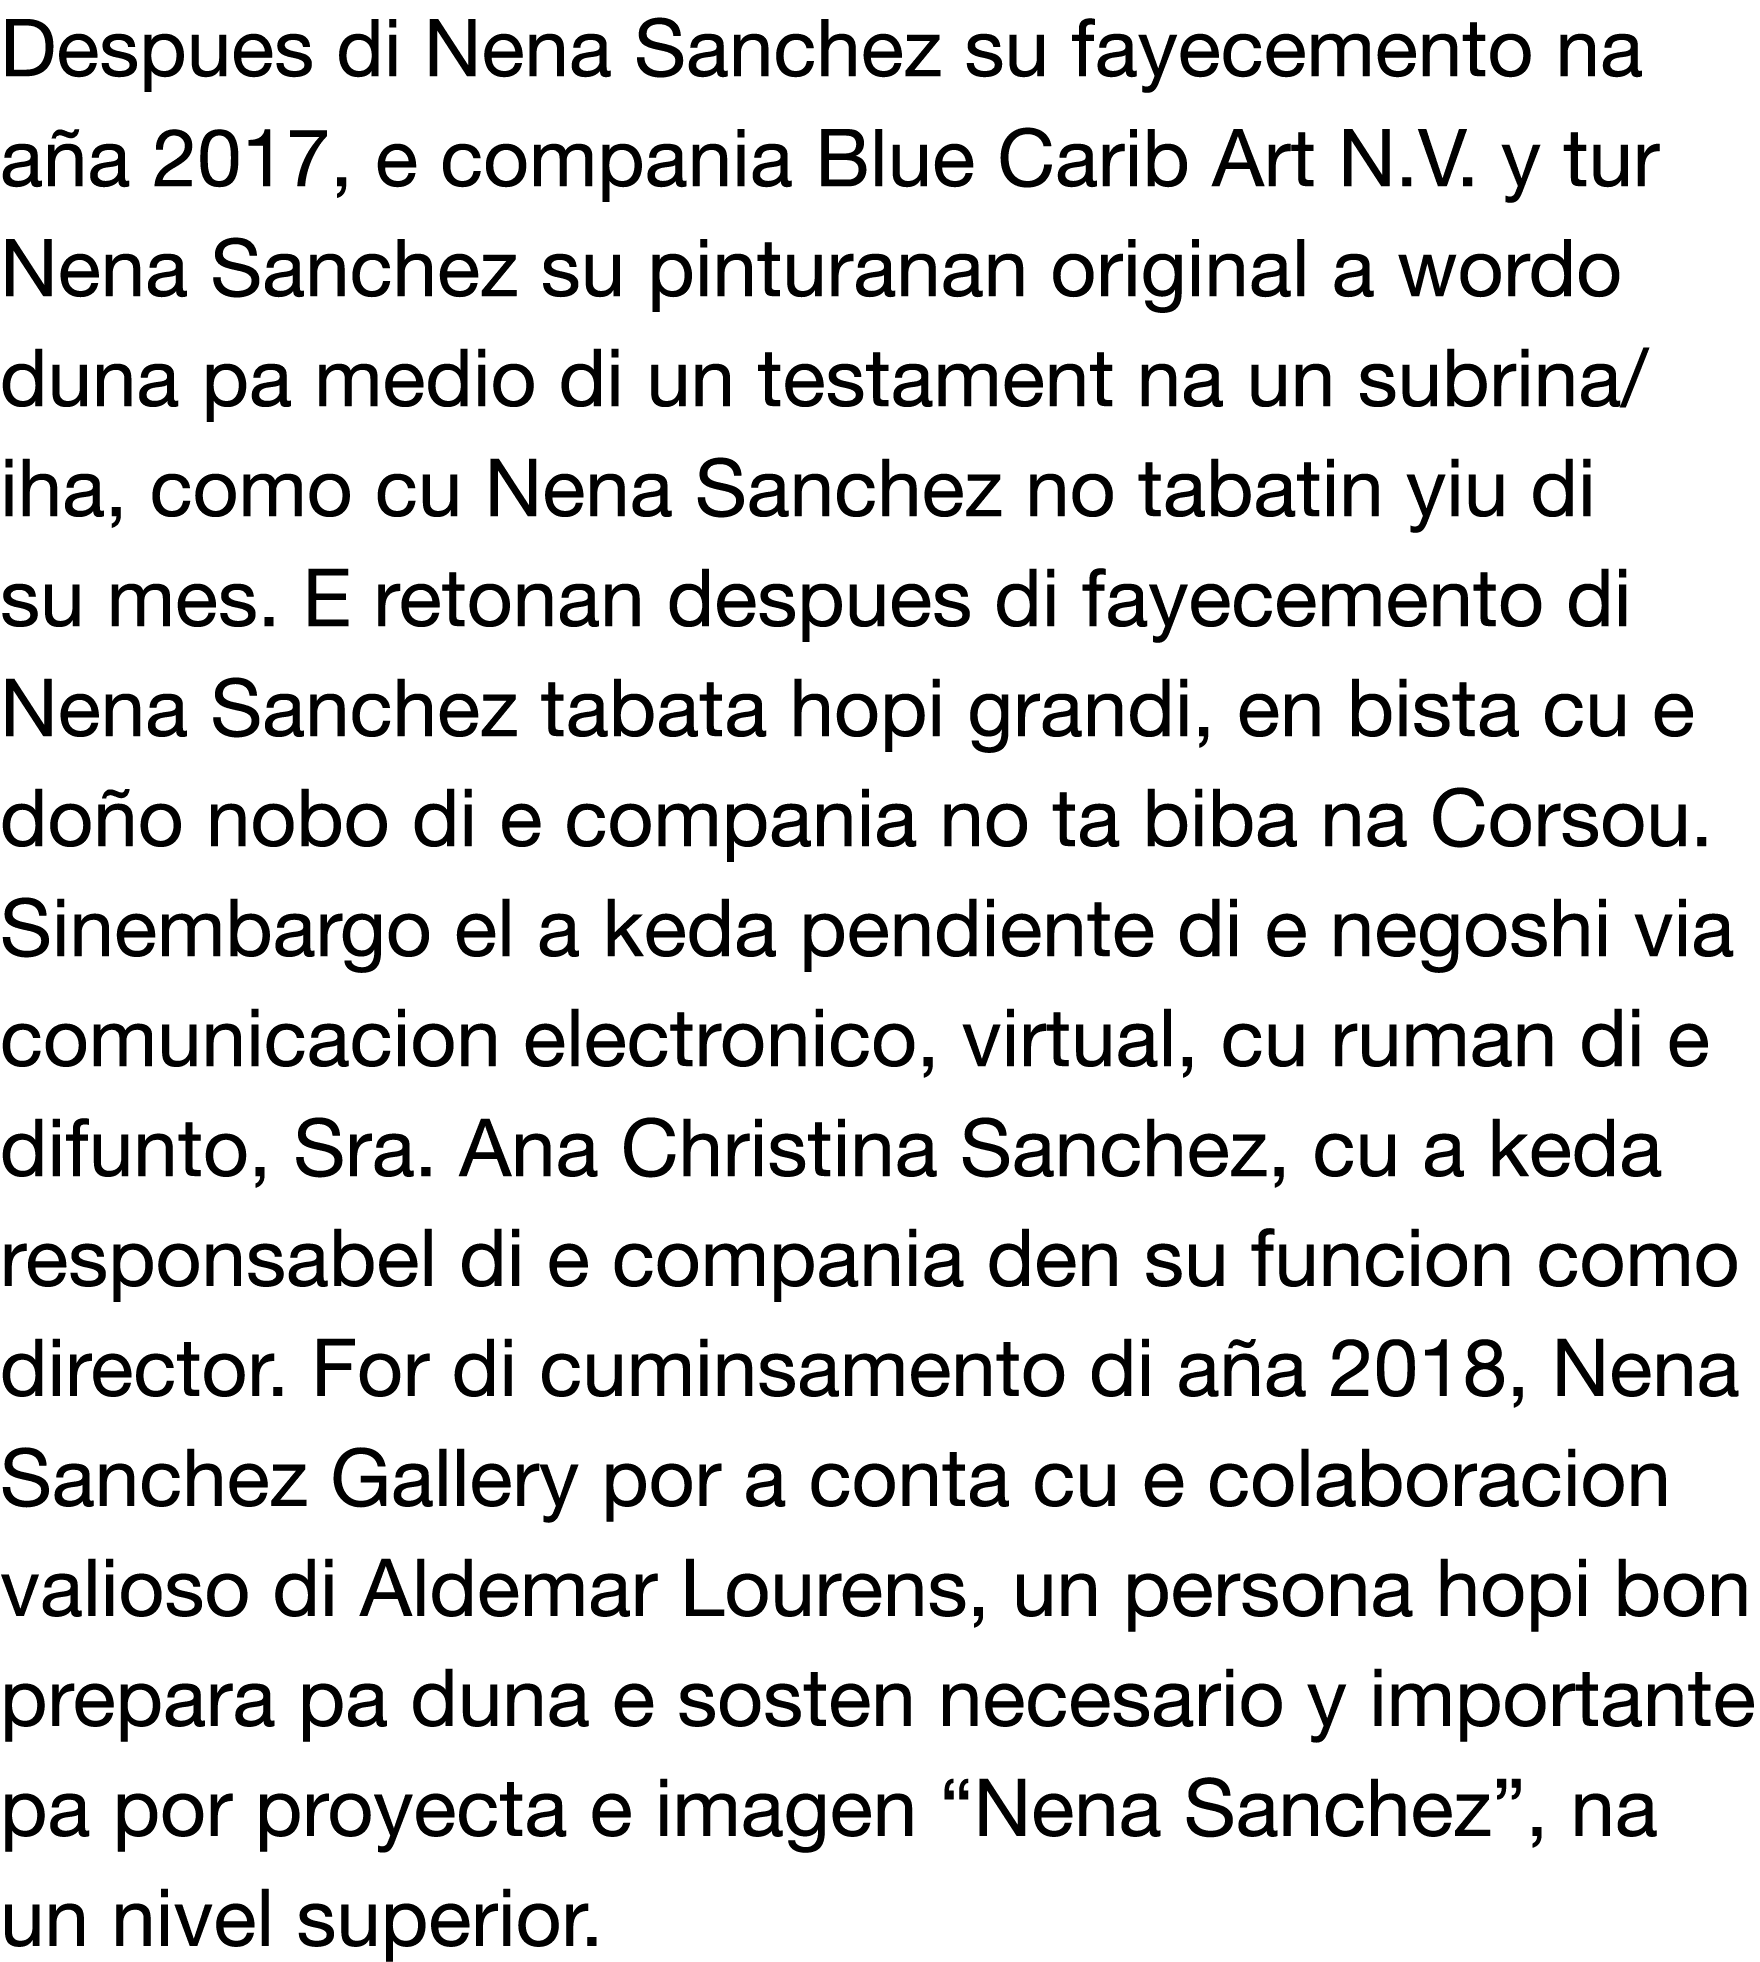 Despues di Nena Sanchez su fayecemento na a a 2017, e compania Blue Carib Art N V  y tur Nena Sanchez su pinturanan o   